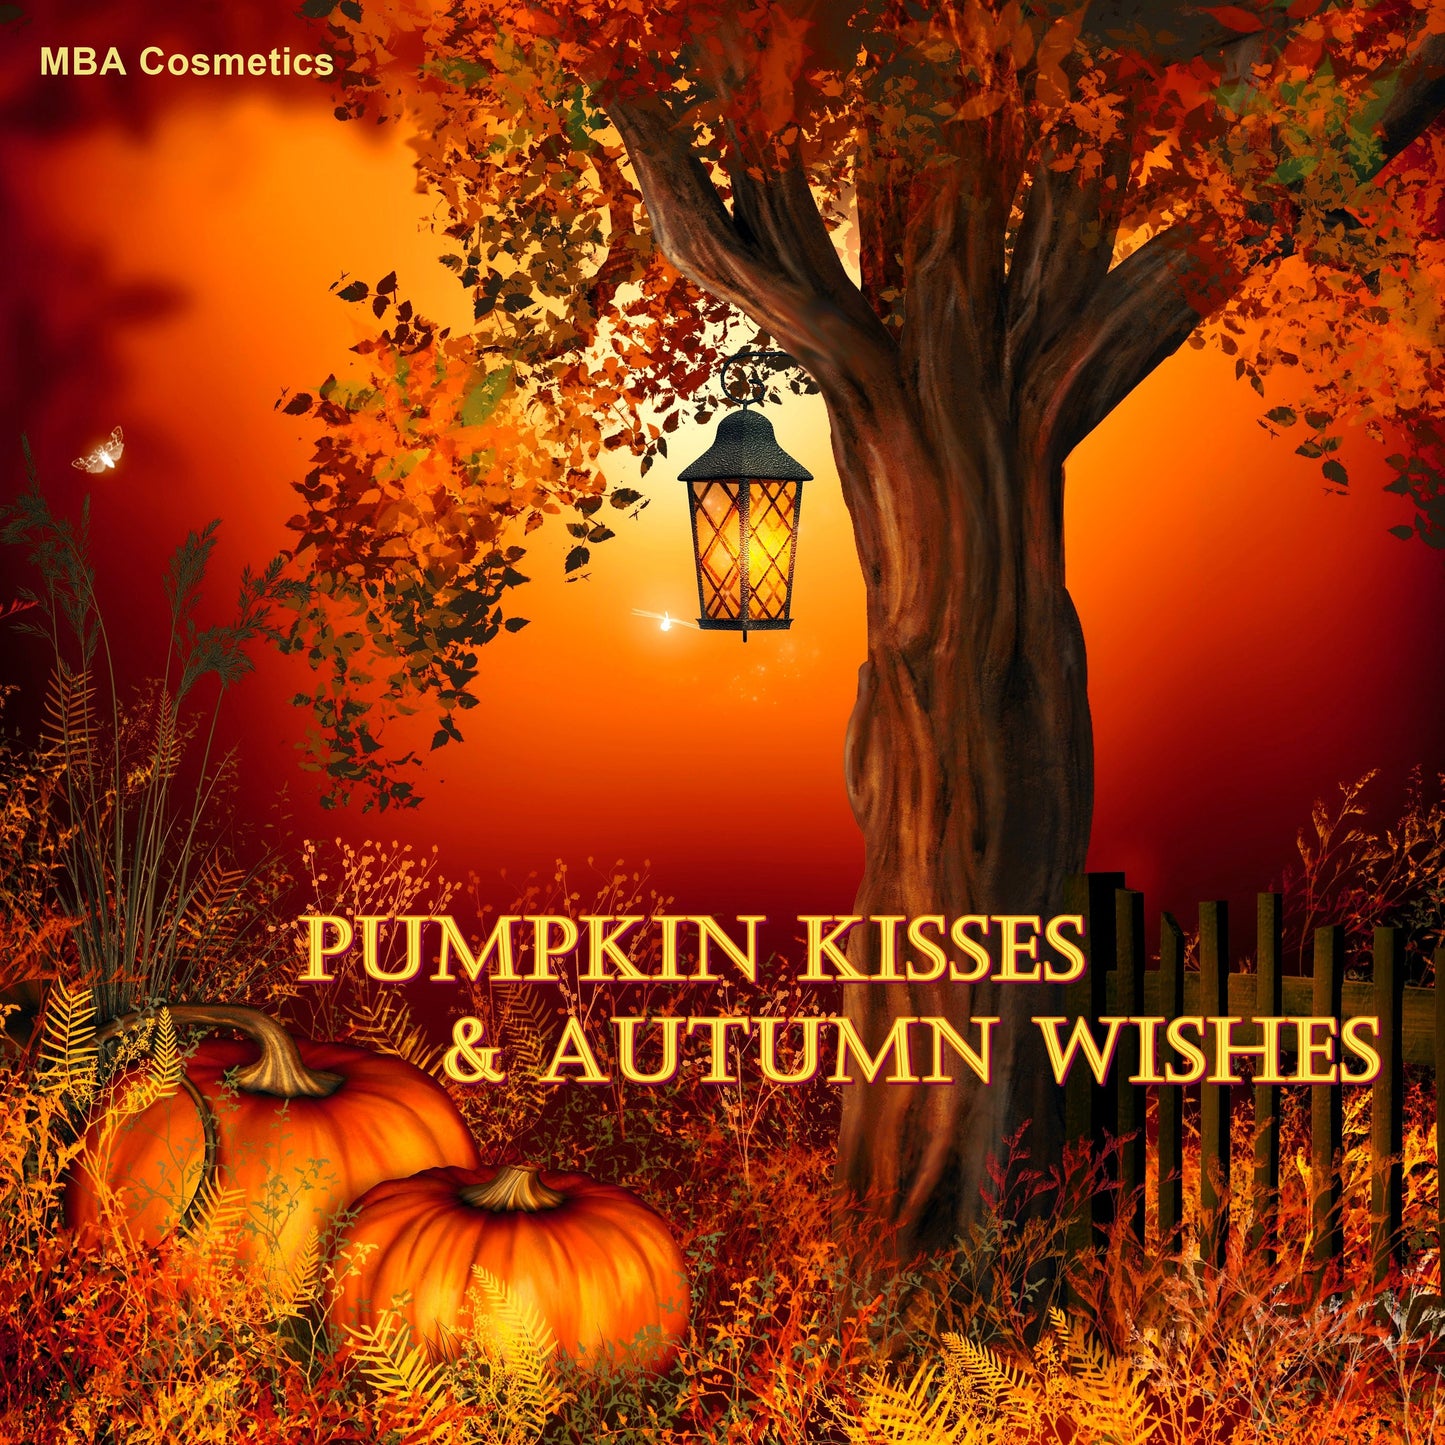 DEFECT-Pumpkin Kisses & Autumn Wishes Eyeshadow Palette